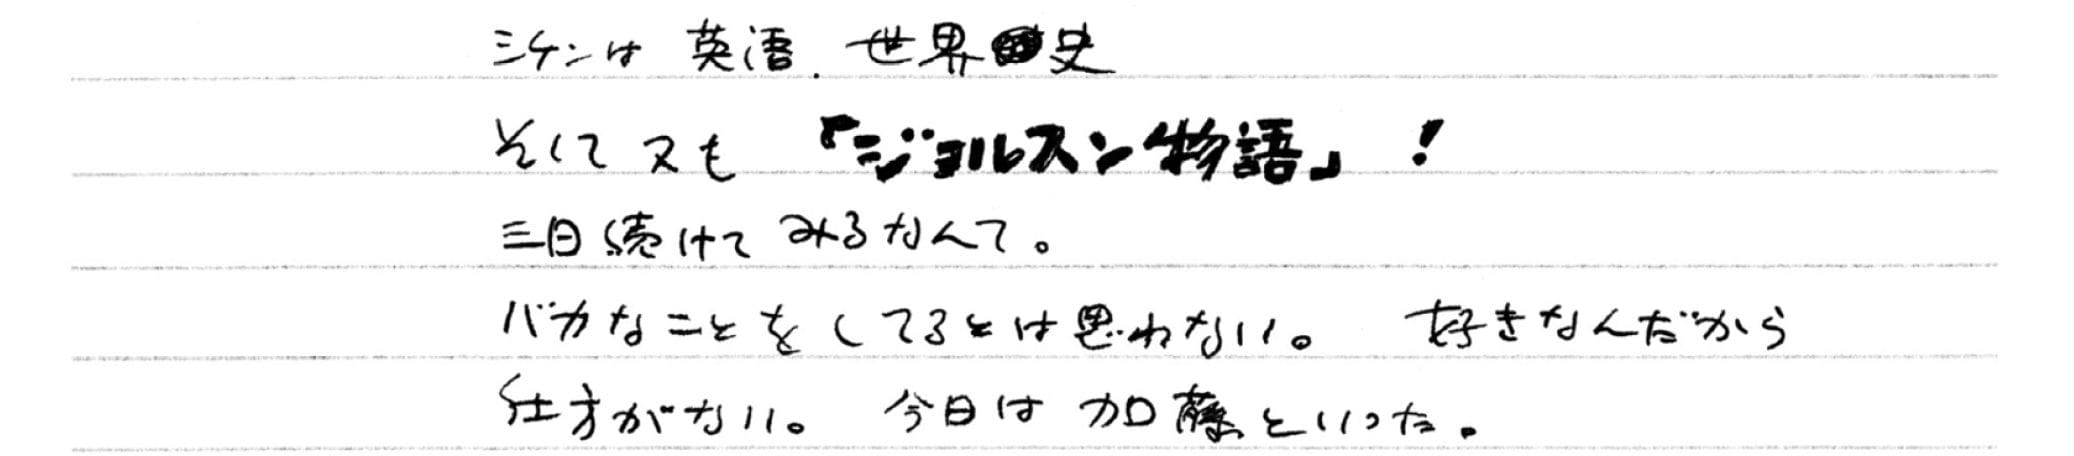 1955年1月31日　のちの著書のタイトルになる「お楽しみはこれからだ」。和田さんは映画『ジョルスン物語』 を見て、元となる名台詞「You ain't heard nothin' yet!」と出会う。すでにこの名翻訳も日記に記されていた　©文藝春秋